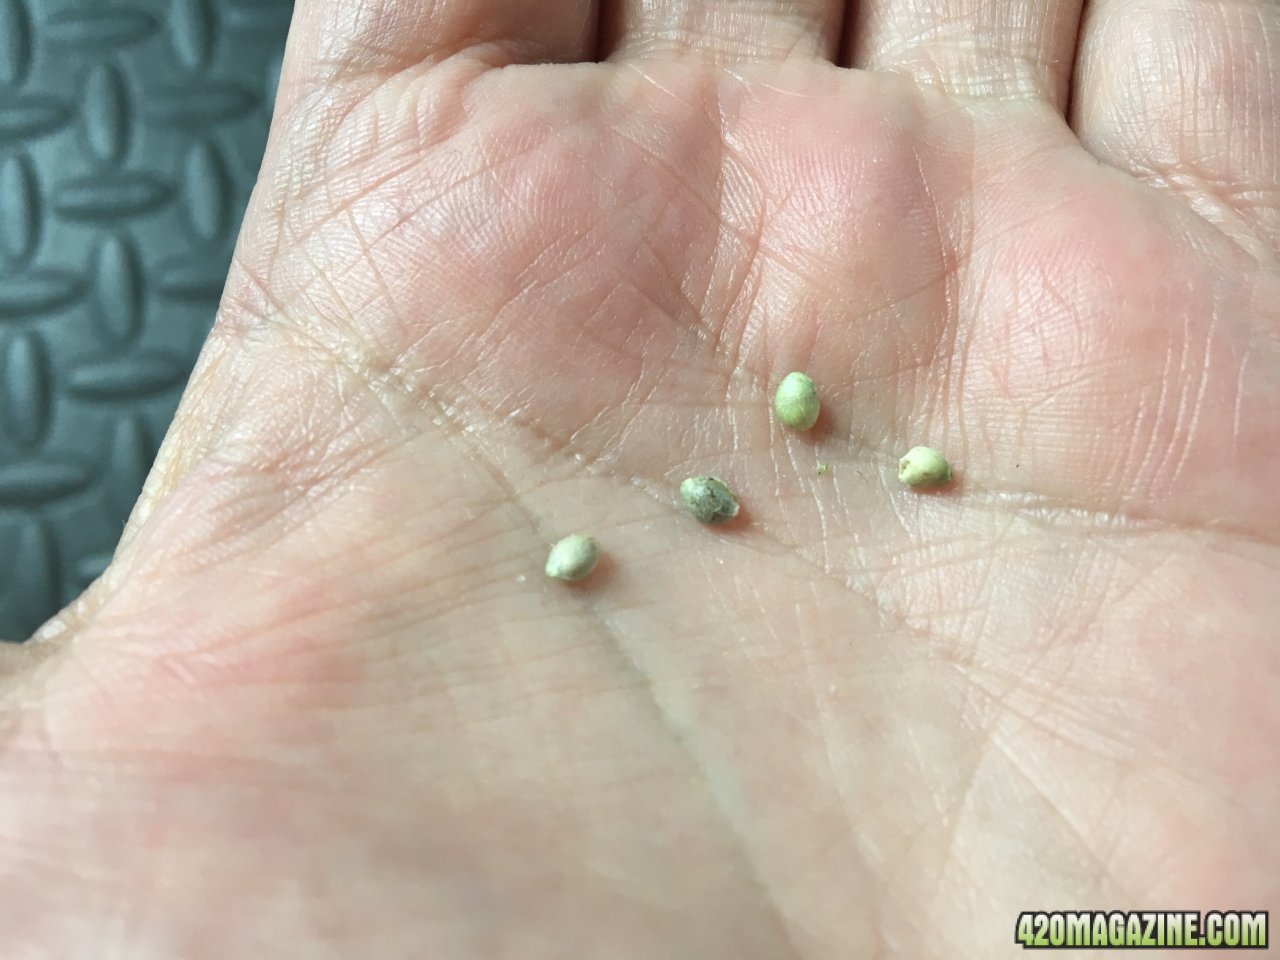 Found seeds